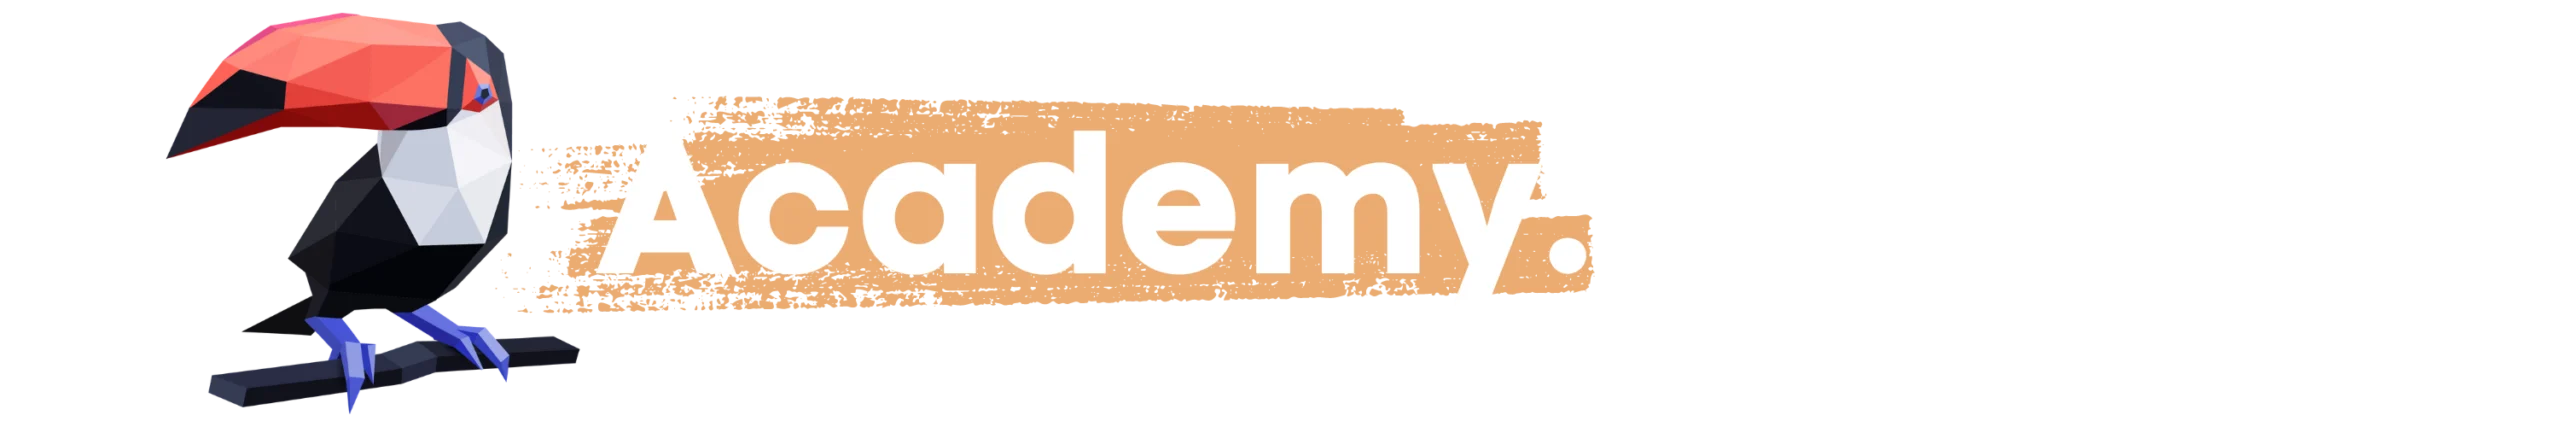 Academy.tocon logo